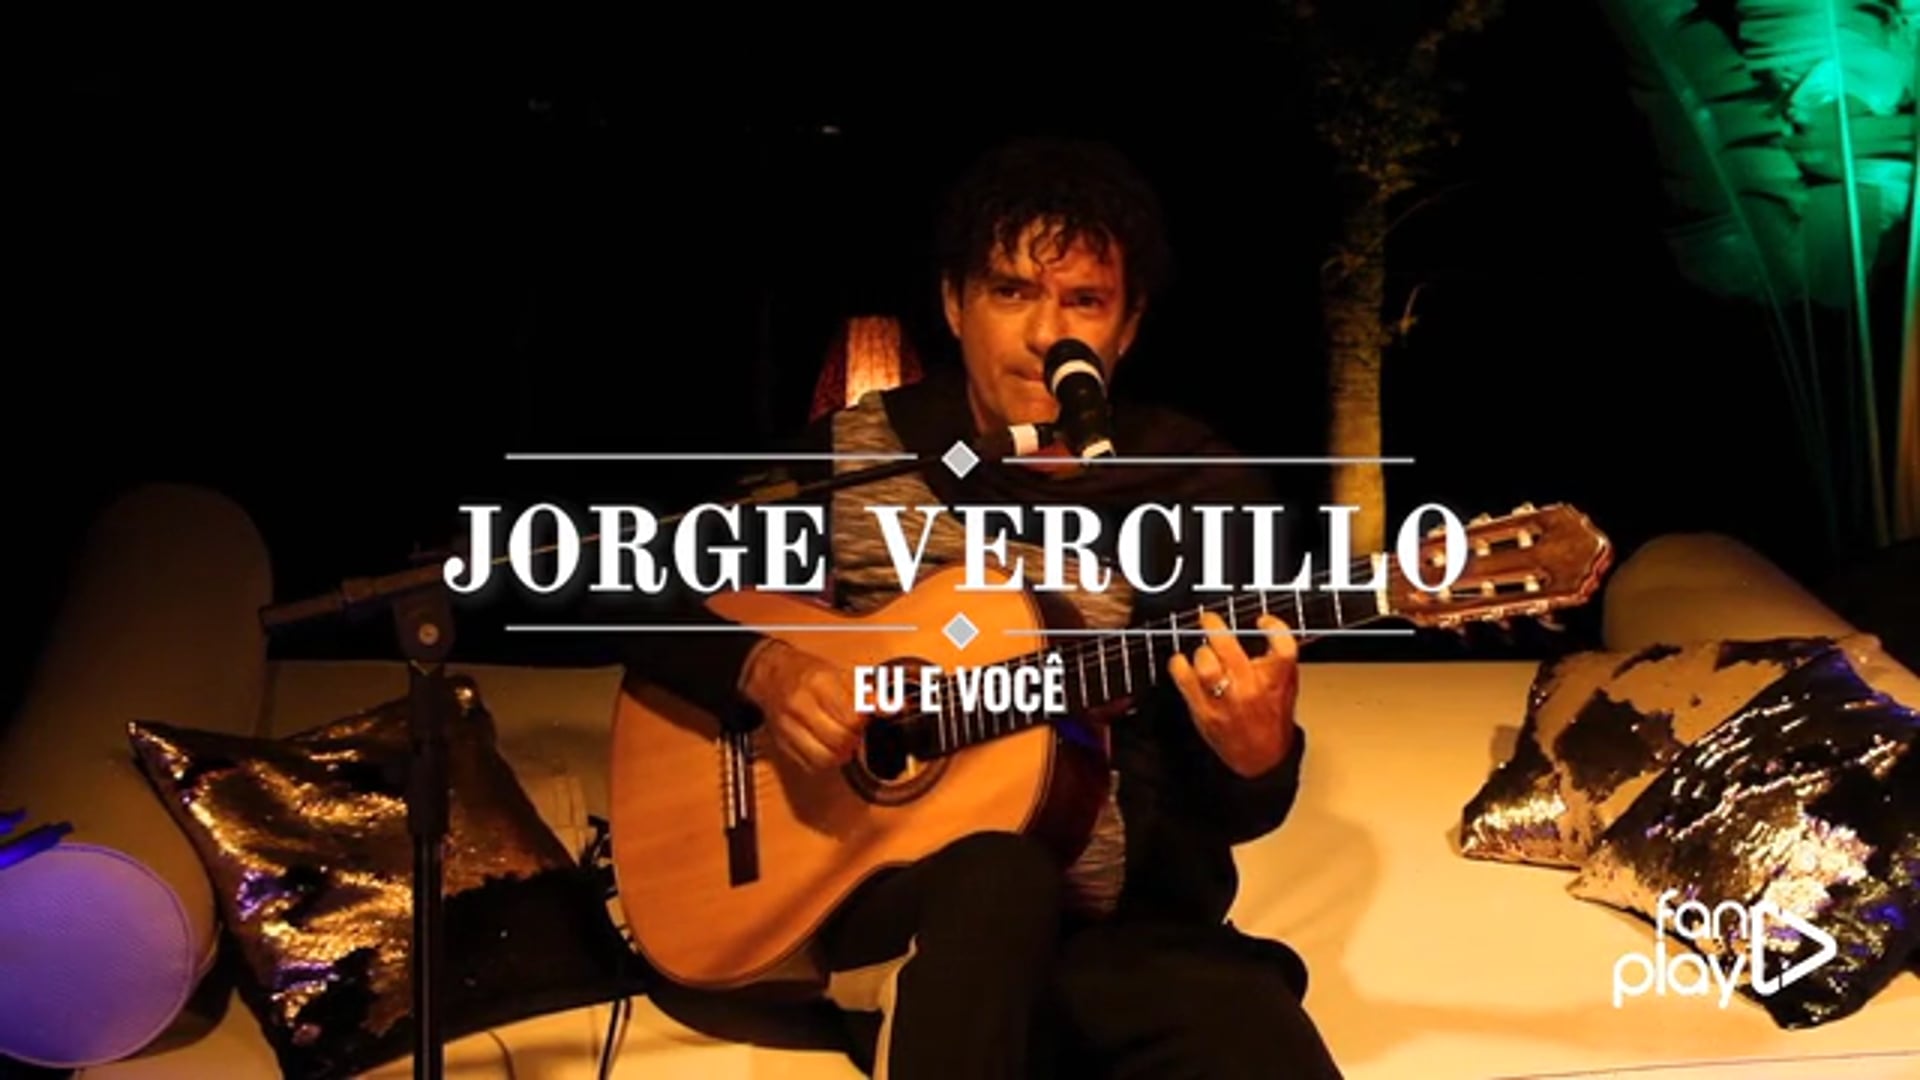 JORGE VERCILLO - Show "Eu e Você"